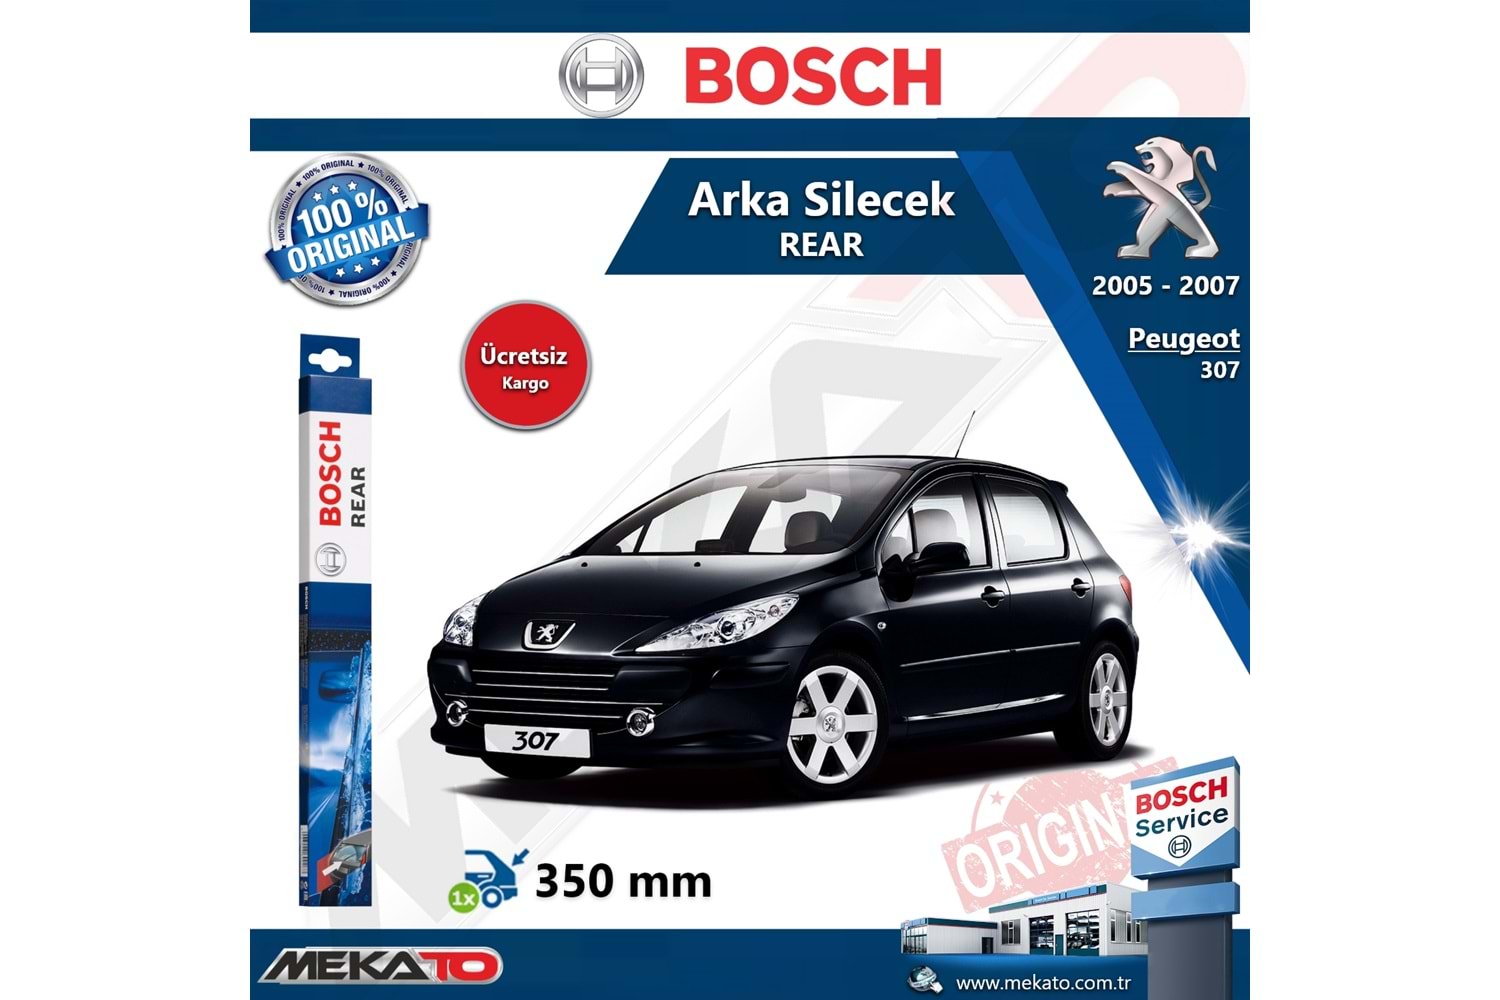 Peugeot 307 Arka Silecek Bosch Rear 2005-2007